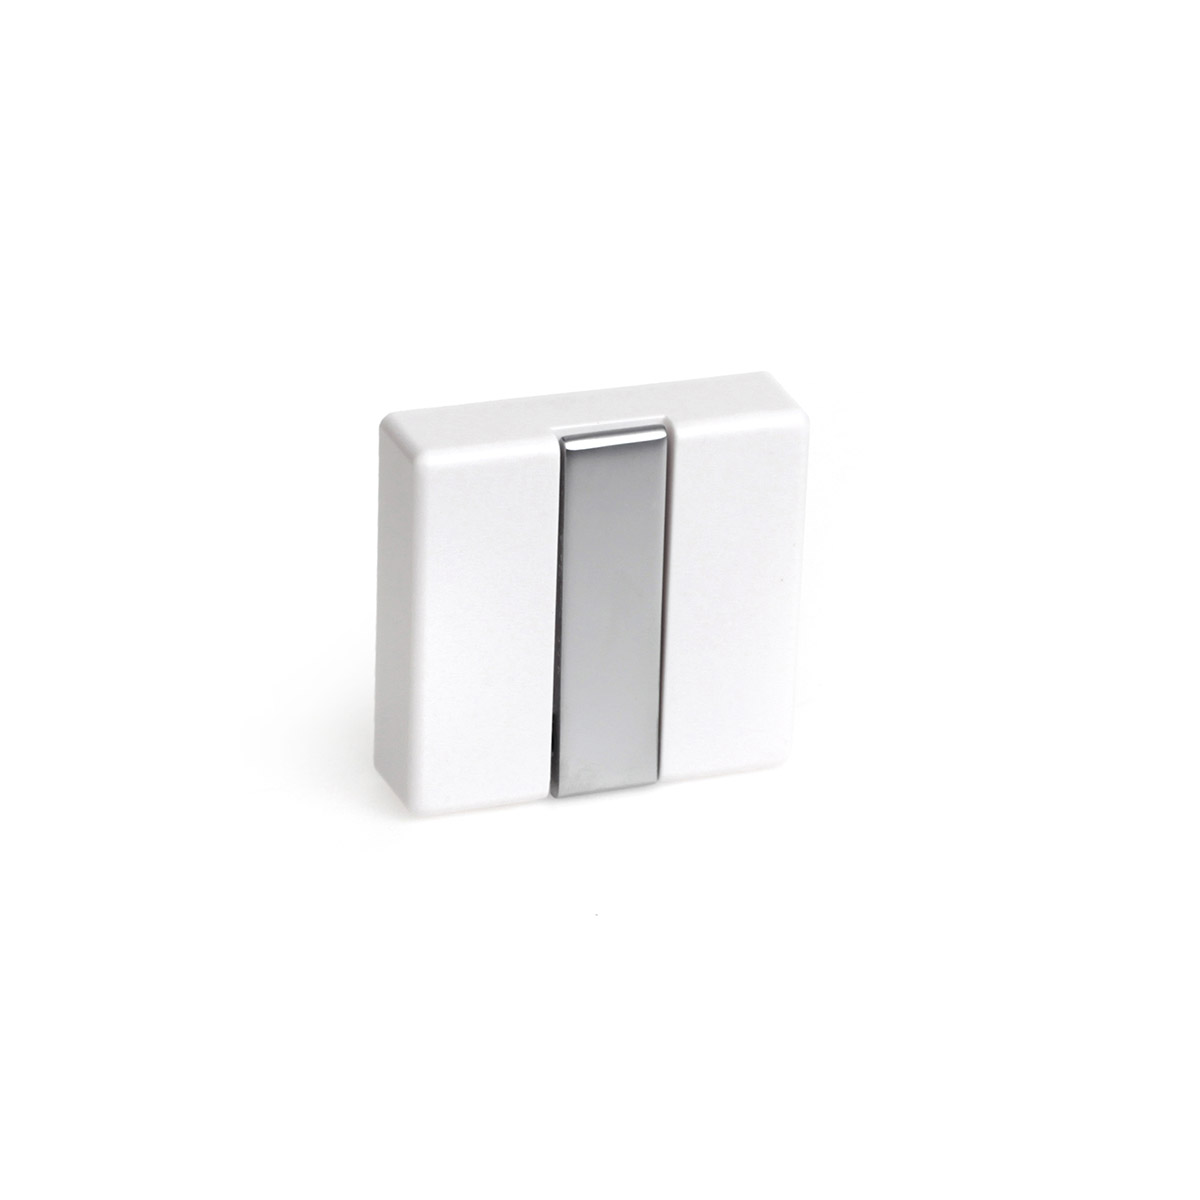 Colgador plegable moderno atornillable con acabado blanco. Dimensiones: 74x20x71 mm